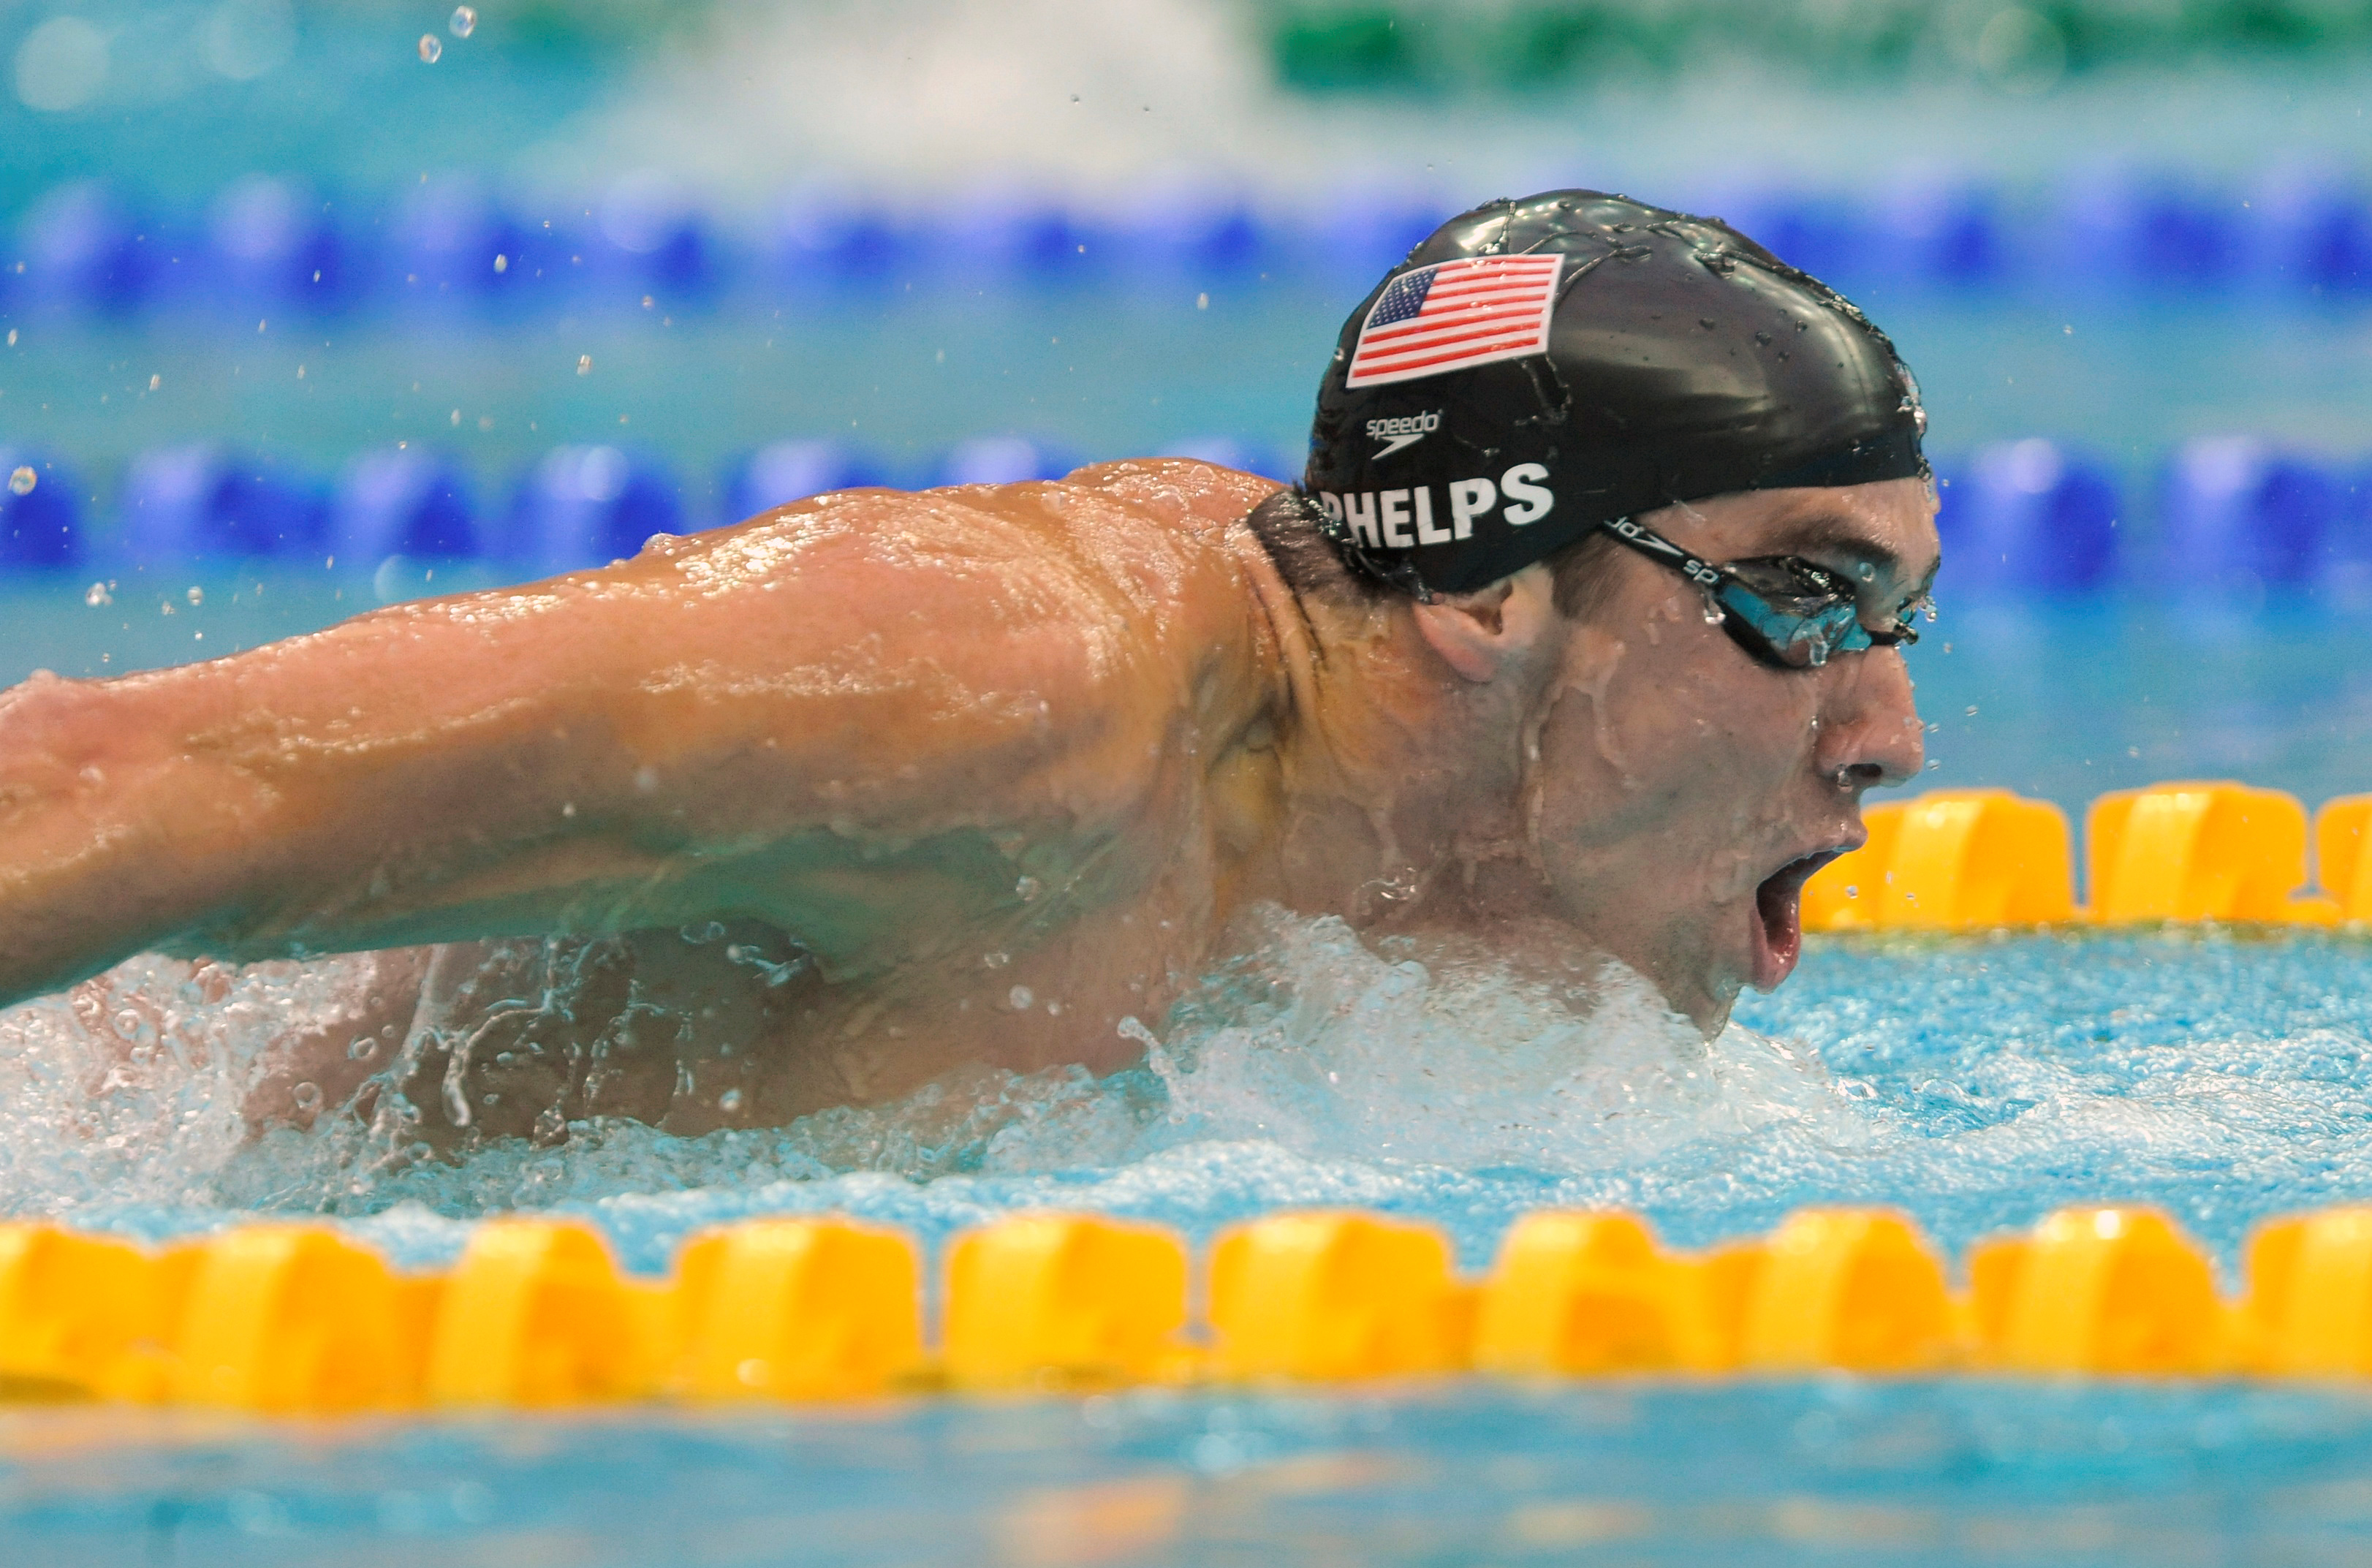 FOTO DE ARCHIVO: Michael Phelps, de los Estados Unidos, compite en su final masculina de natación mariposa de 200 metros en el Centro Acuático Nacional durante los Juegos Olímpicos de Beijing 2008, el 13 de agosto de 2008. Phelps ganó el oro y estableció un nuevo récord mundial. REUTERS/Kai Pfaffenbach (CHINA) /Foto de archivo